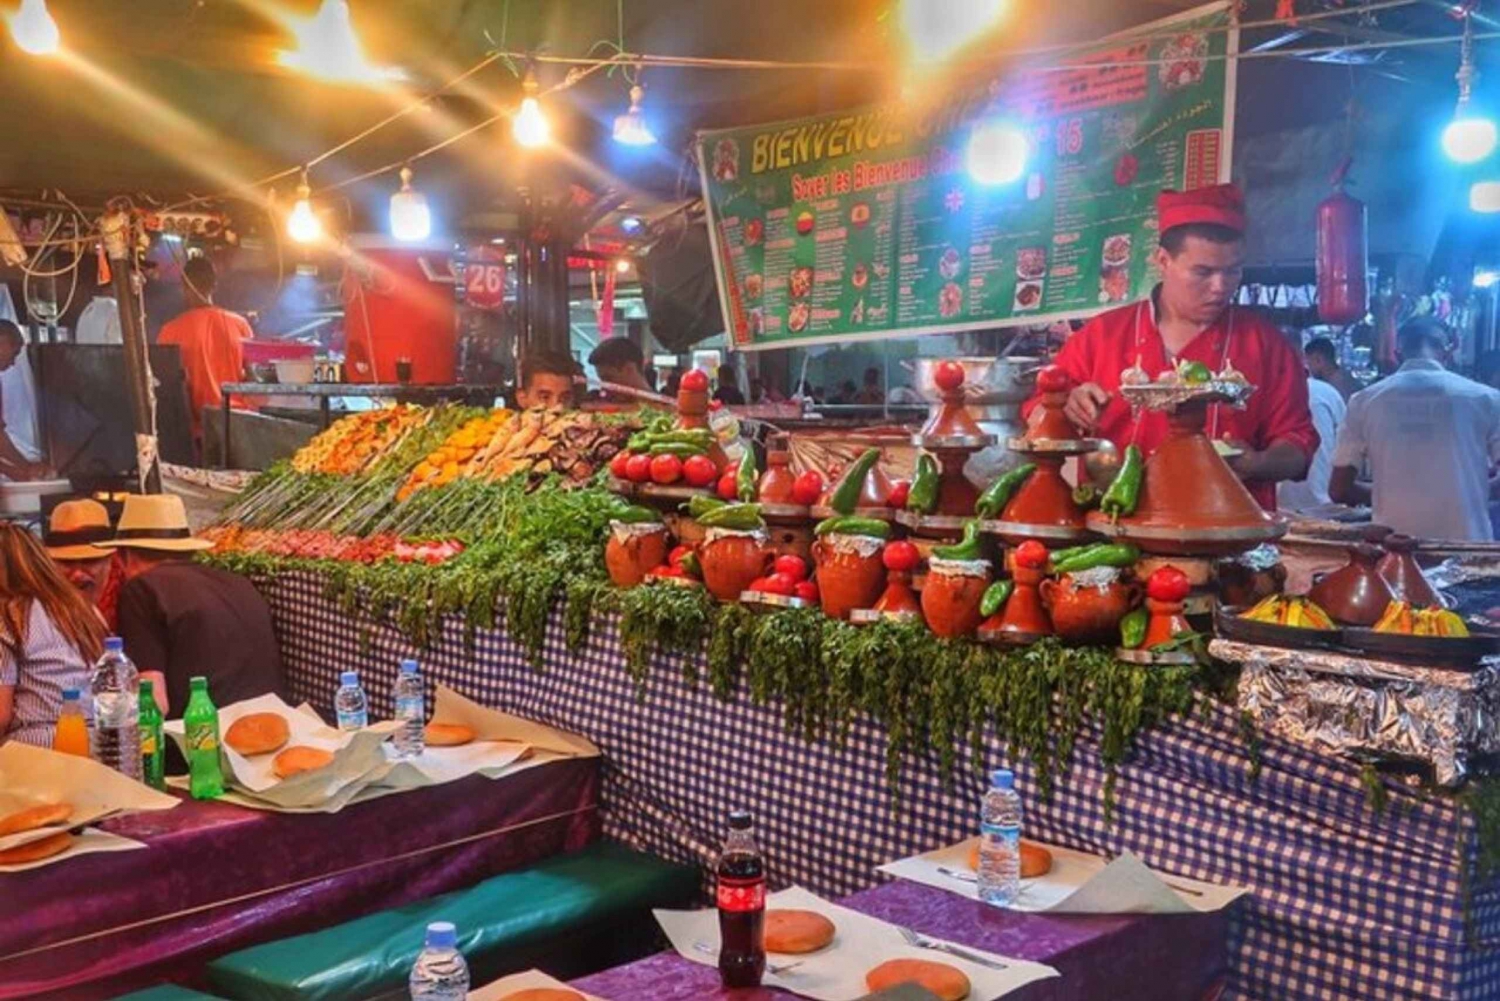 Marrakech: tour gastronomico dei sapori marocchini con cena